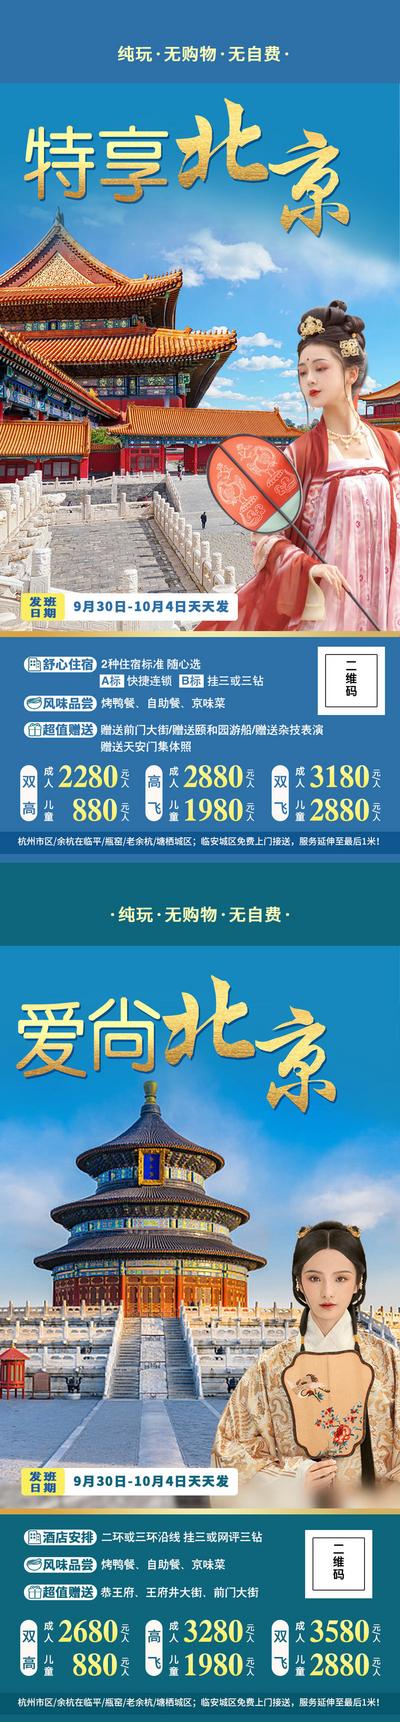 南门网 海报 旅游 北京 人物 故宫 景点 风景 蓝金